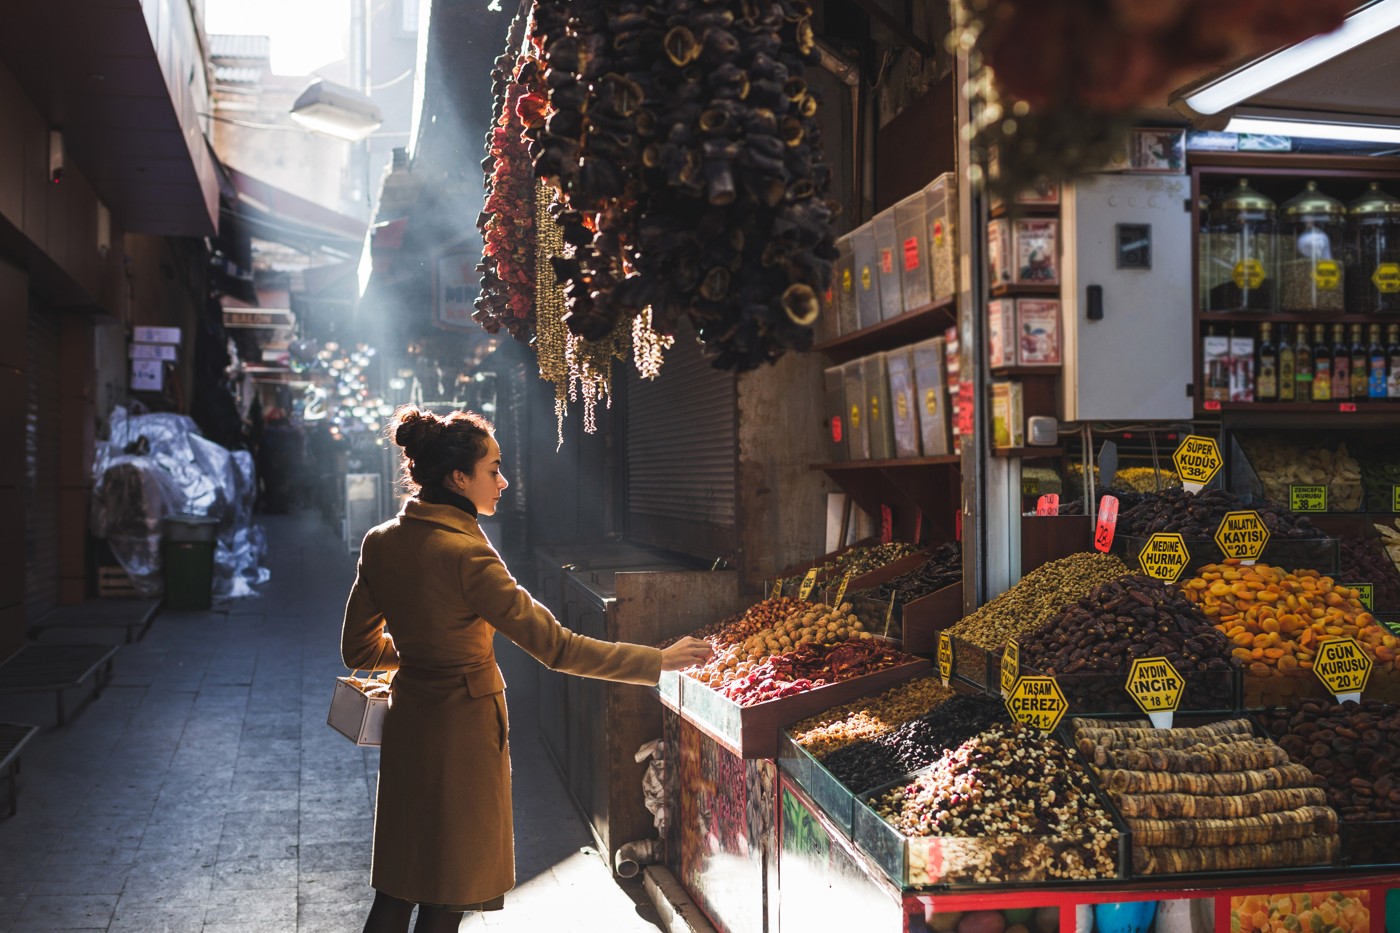 Woman choosing fruits in market